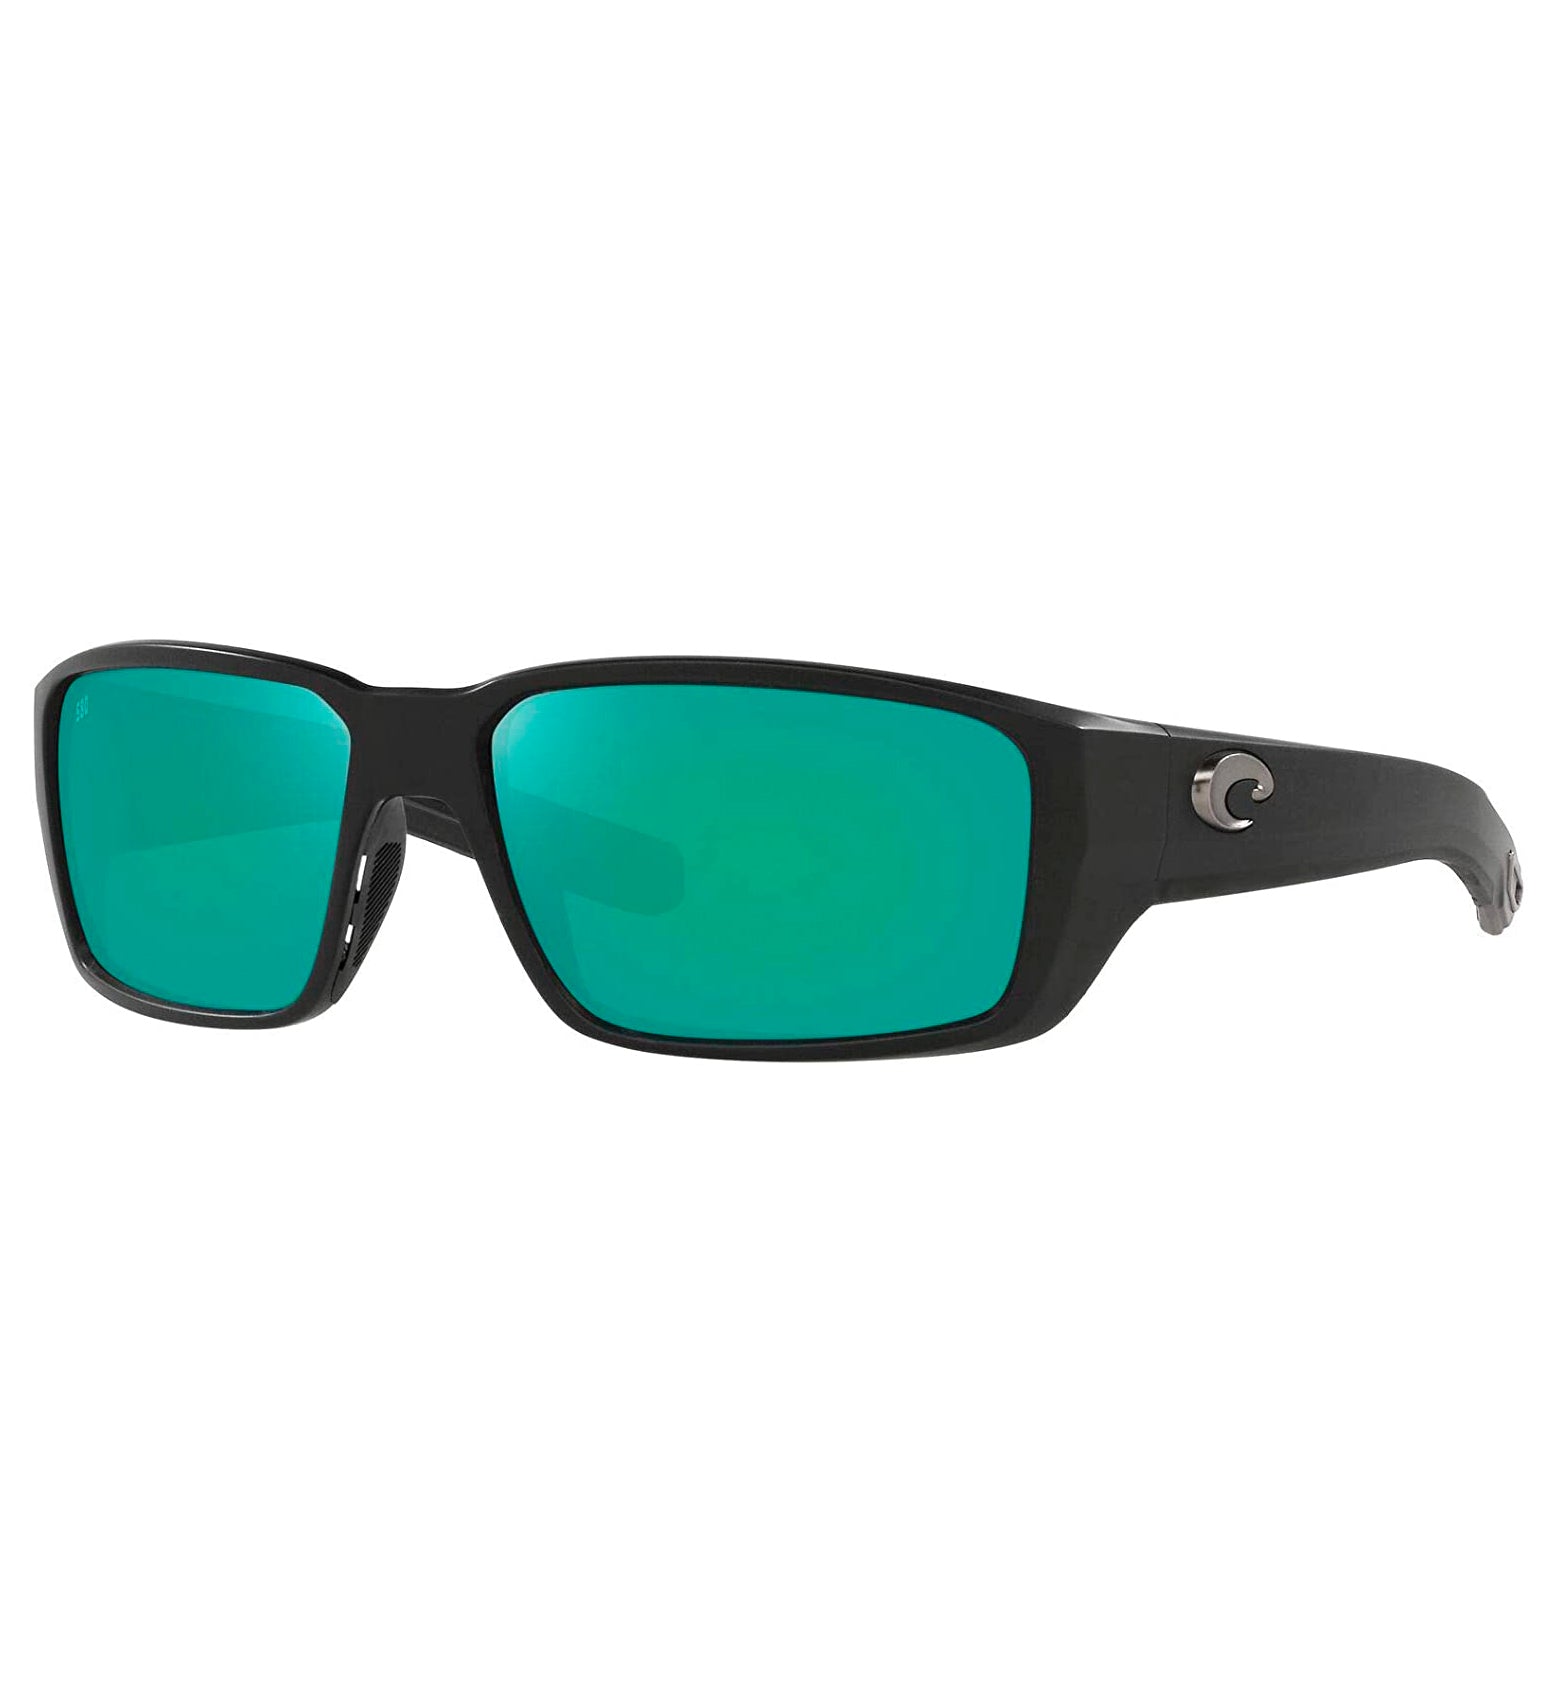 Costa Del Mar Fantail Pro Sunglasses MatteBlack GreenMirror 580G